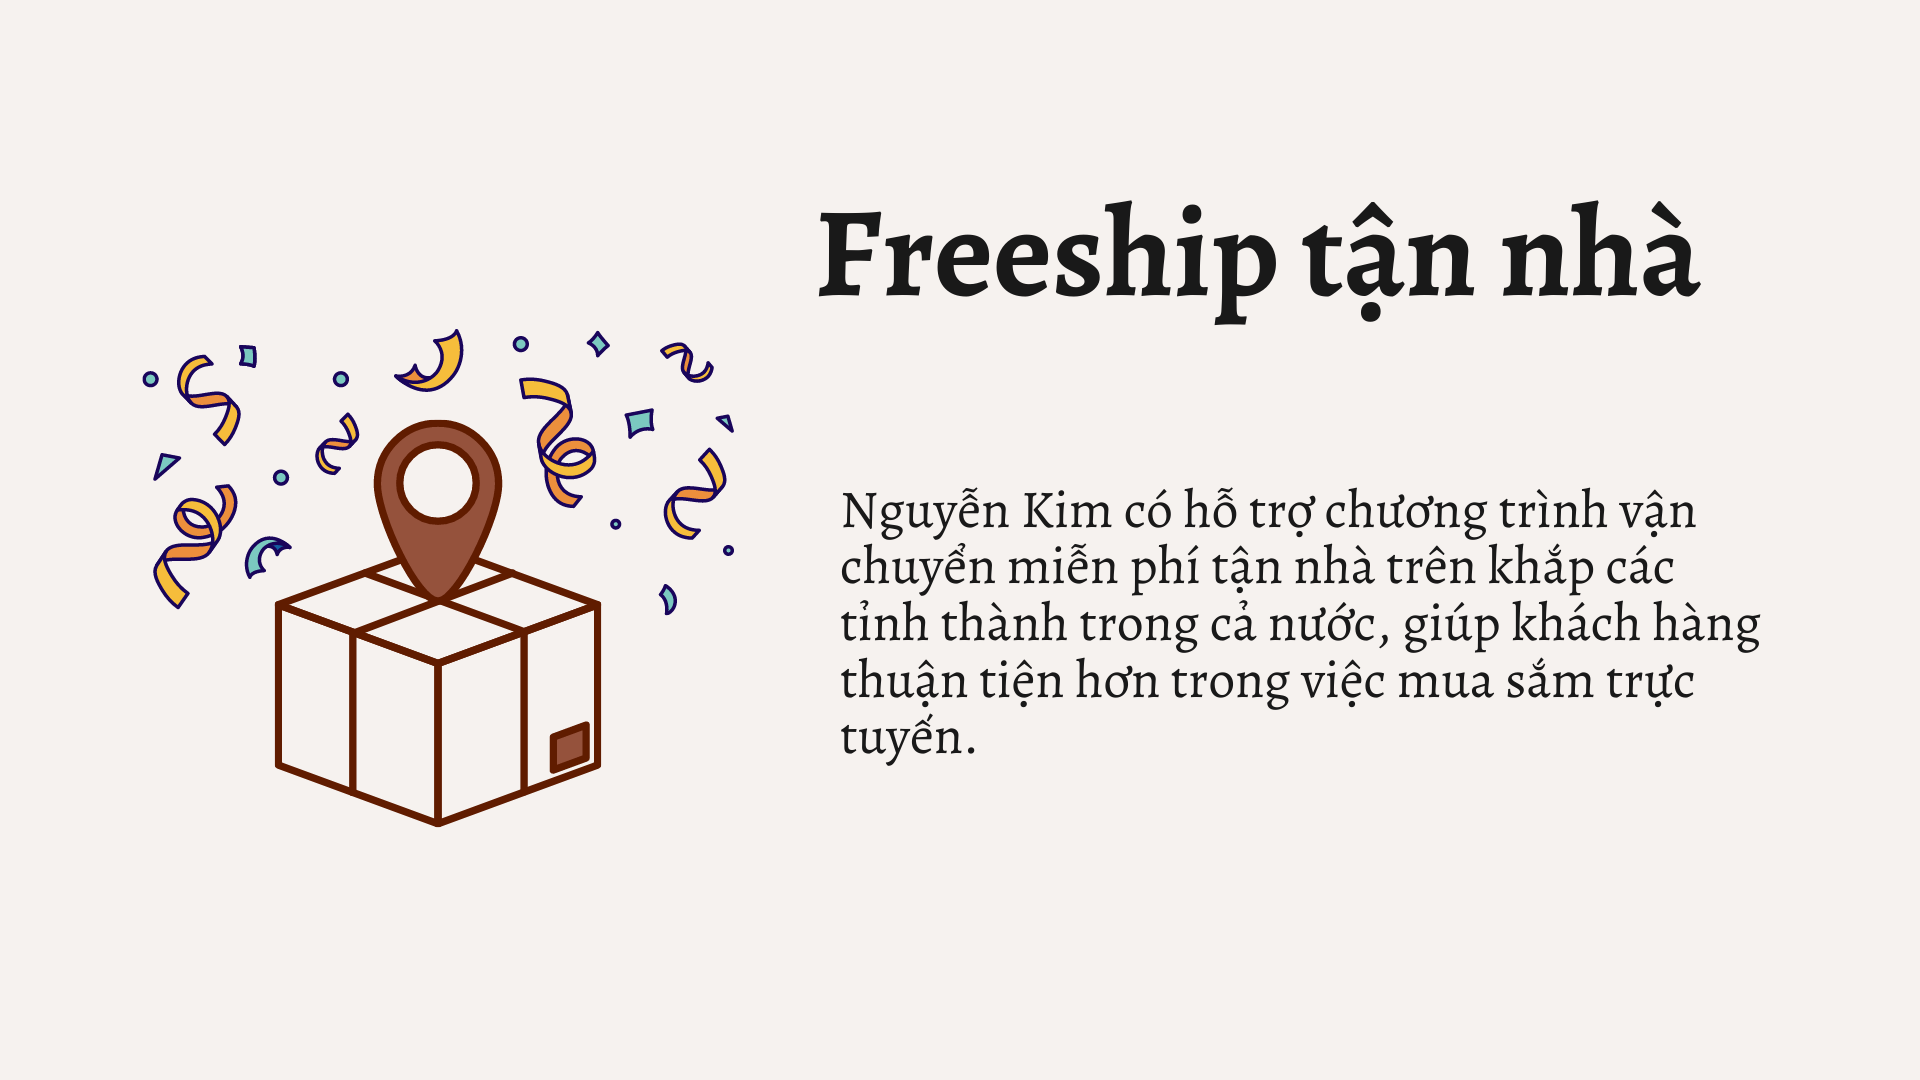 Khuyến mãi Nguyễn Kim vẫn đảm bảo dịch vụ hậu mãi cho khách hàng